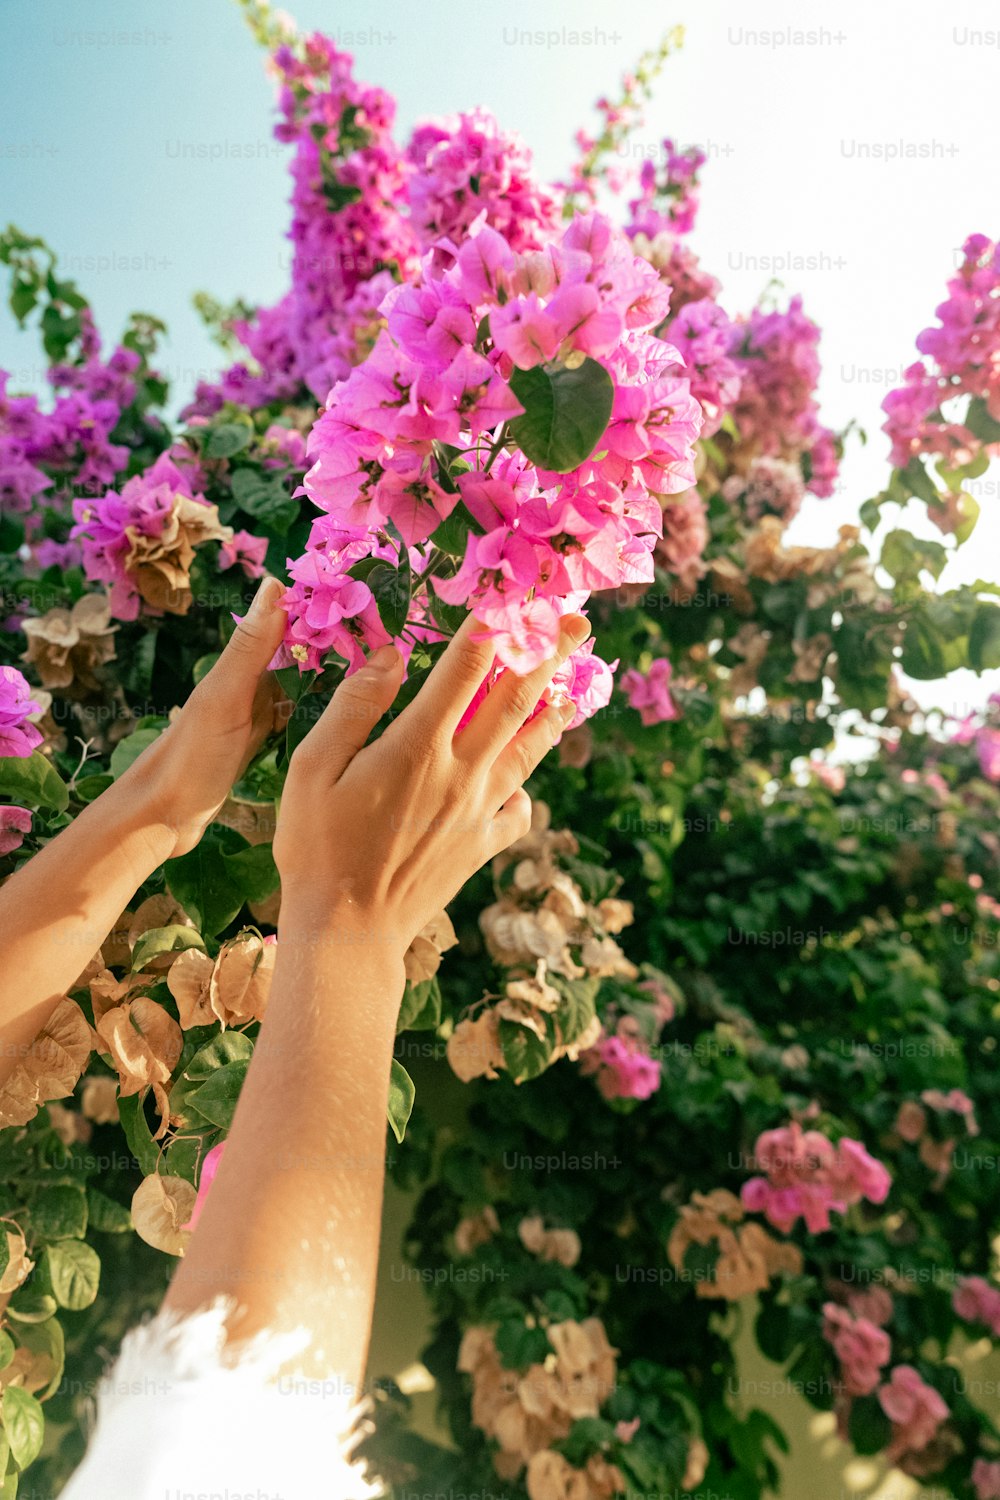 zwei Hände, die nach einem Blumenstrauß greifen